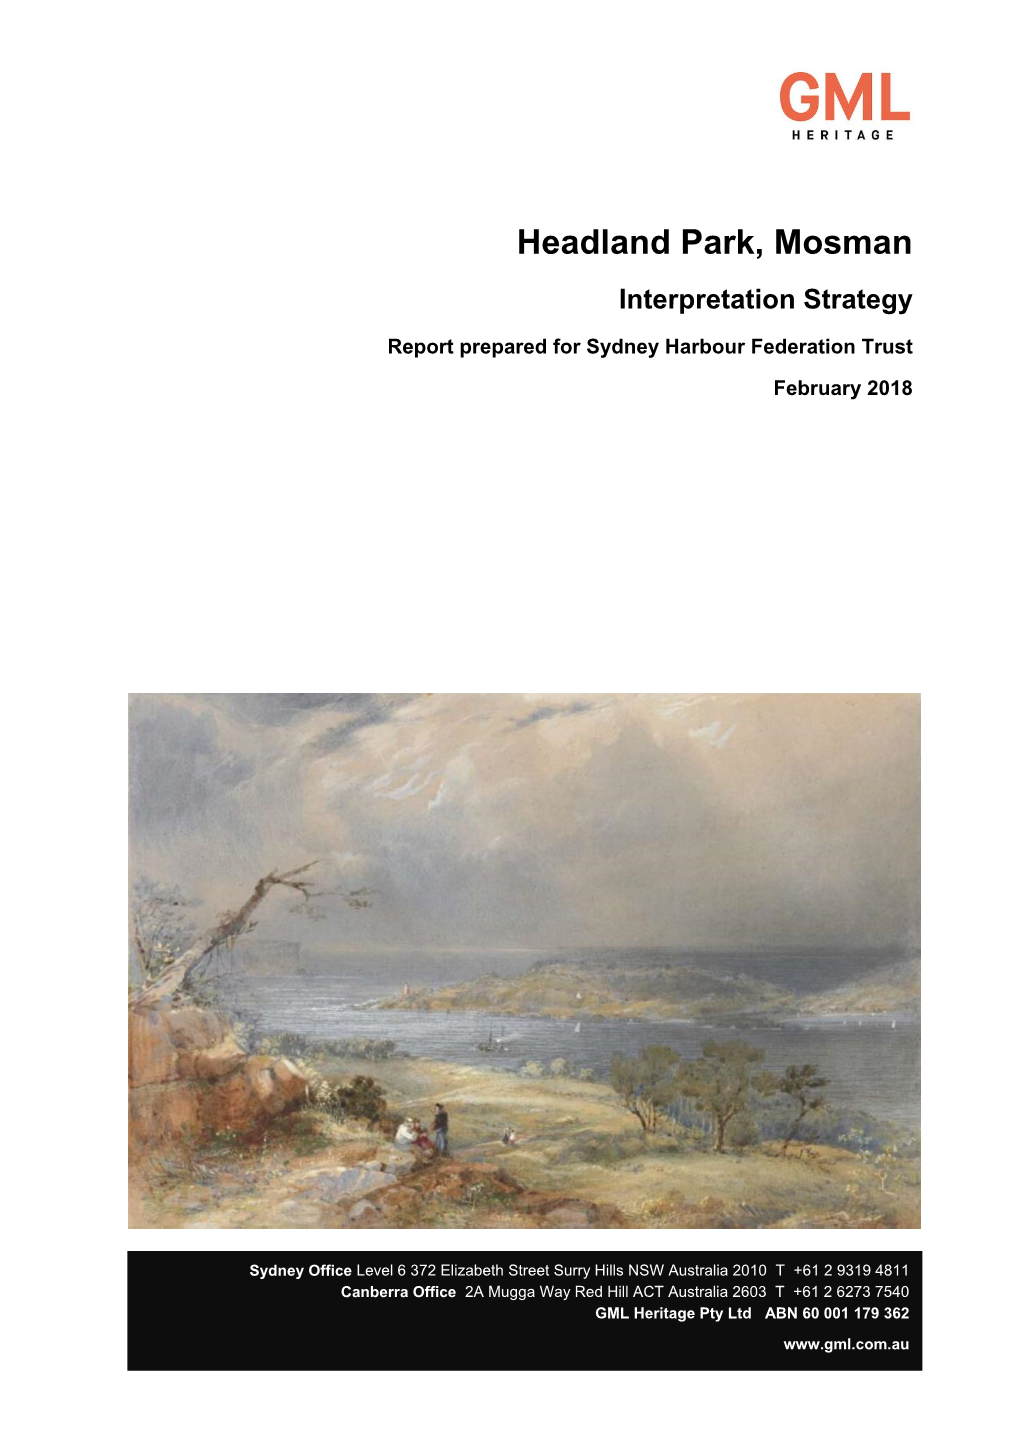 Headland Park, Mosman Interpretation Strategy